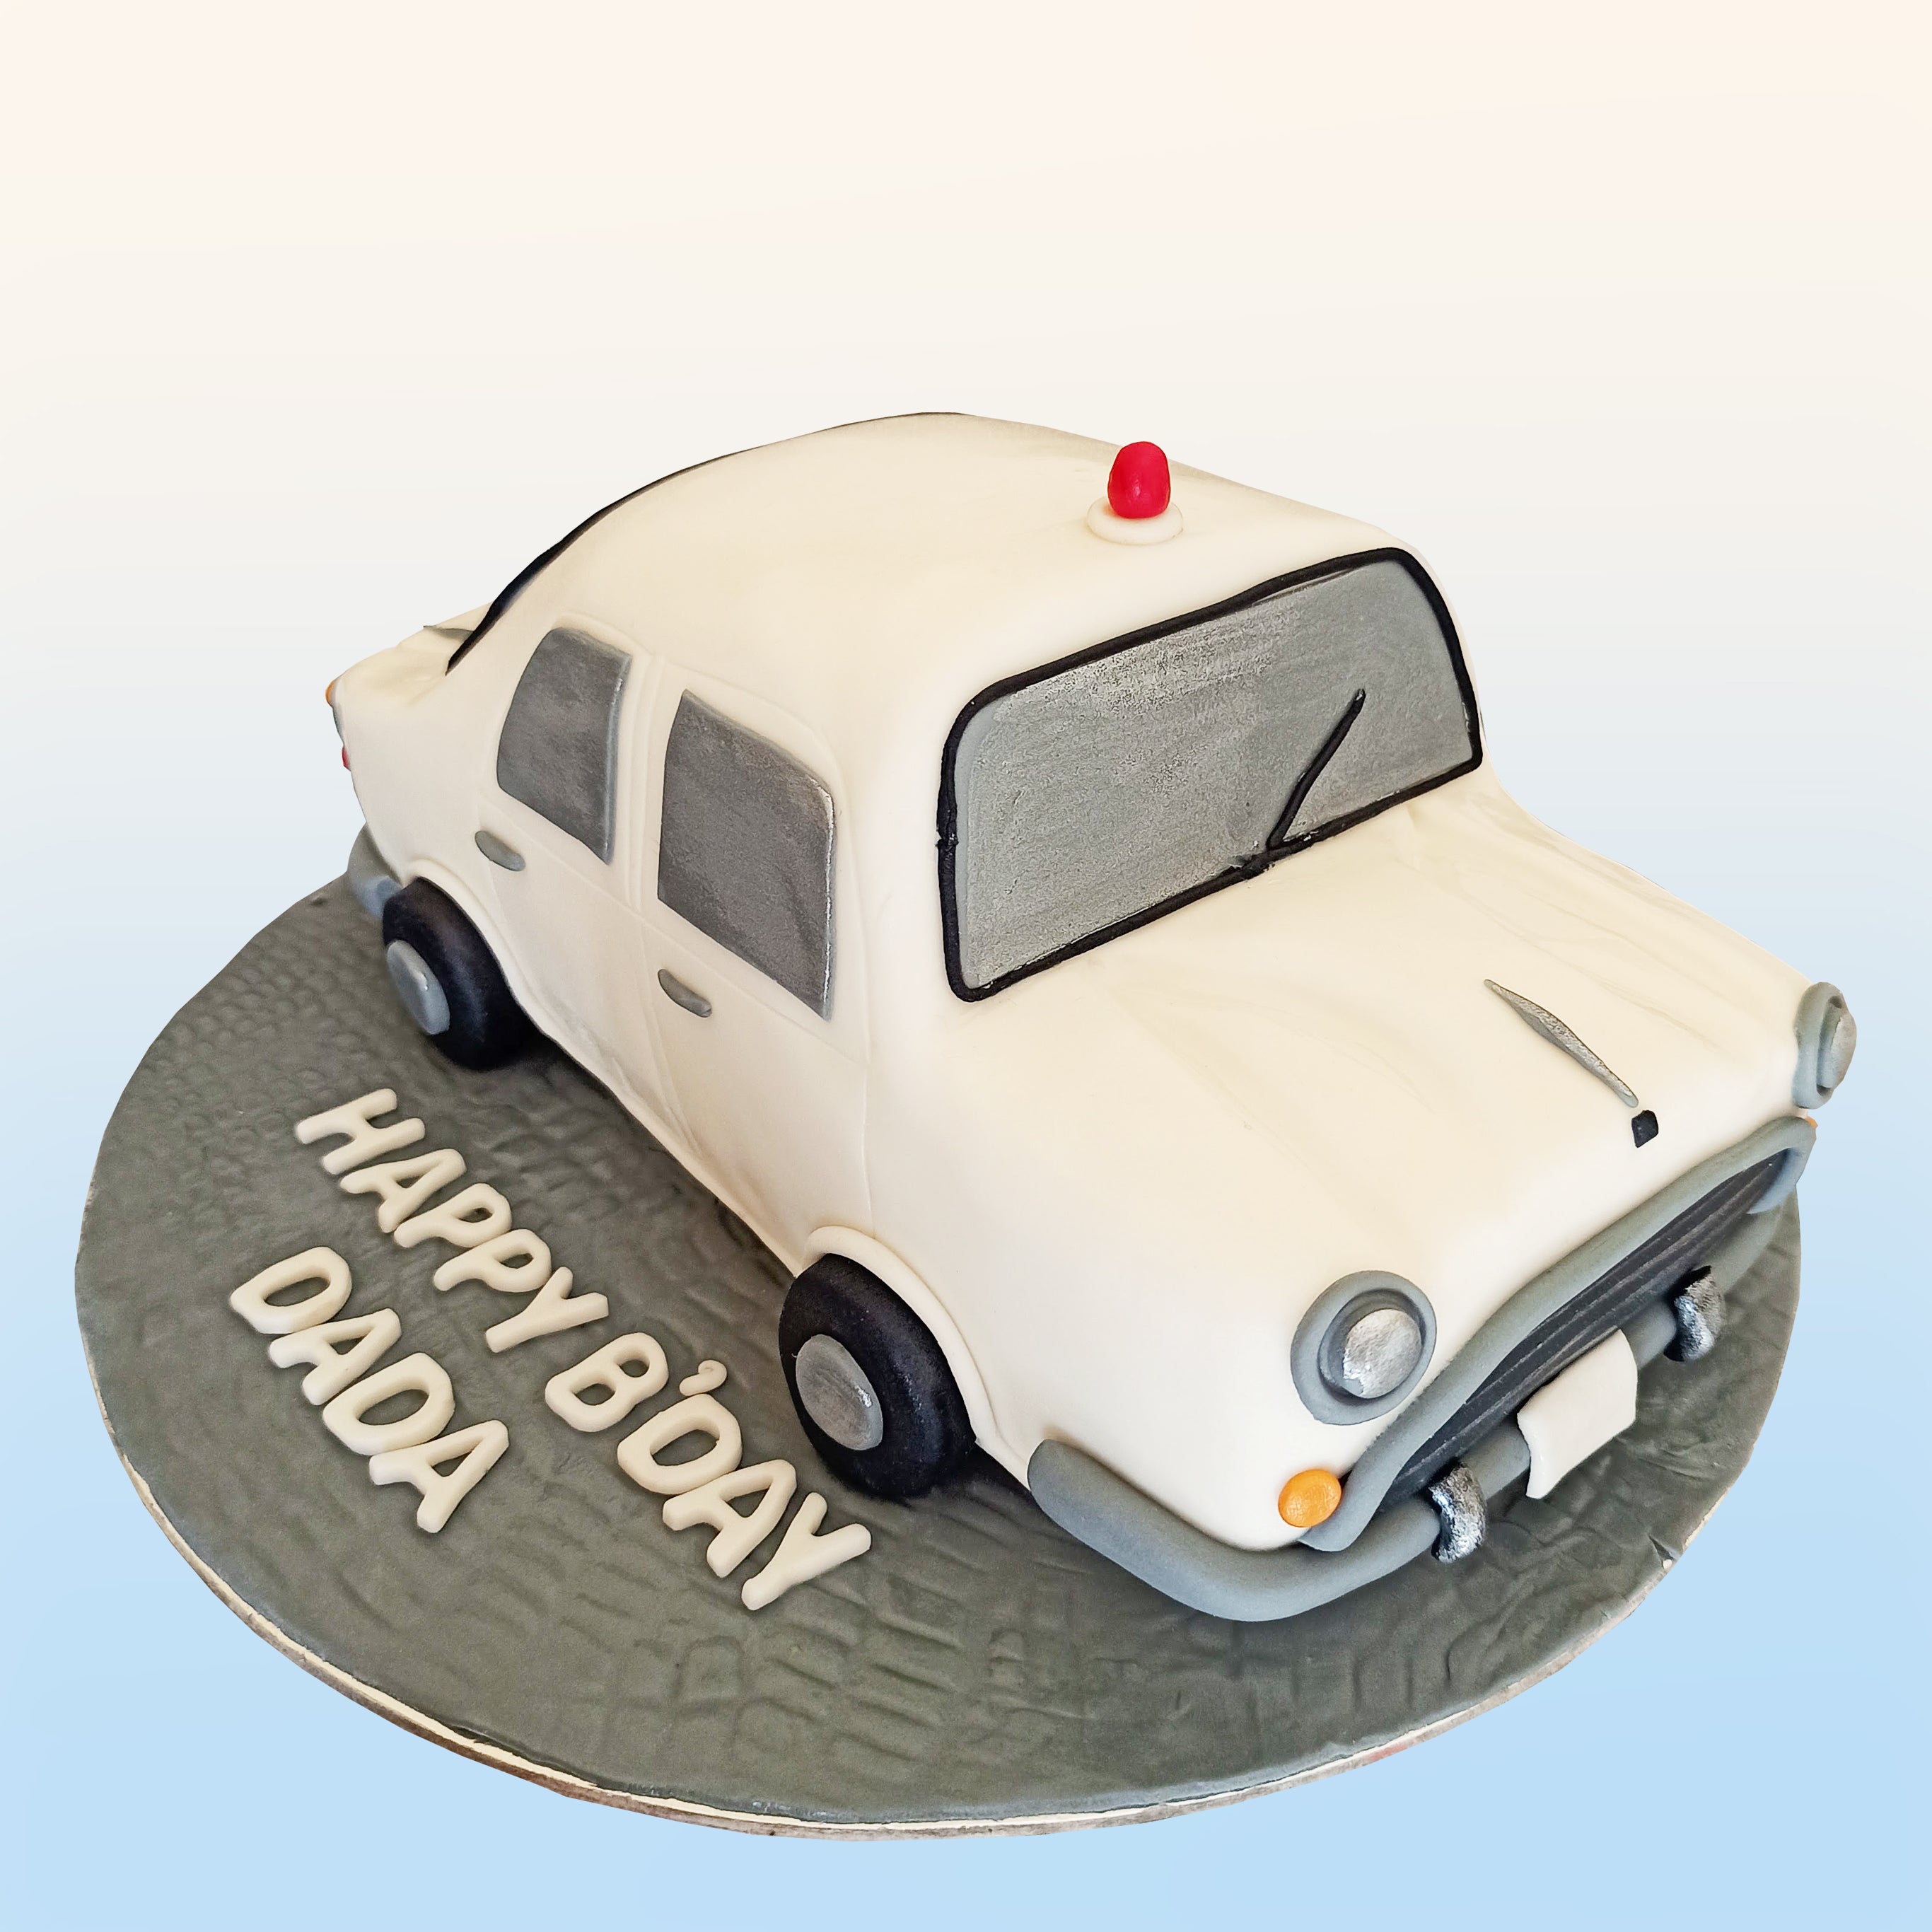 Car Cake Cutting karne ka sahi Trick |Car Cake Design |Car Cake Recipe |Car  Birthday Cake for Boy - YouTube